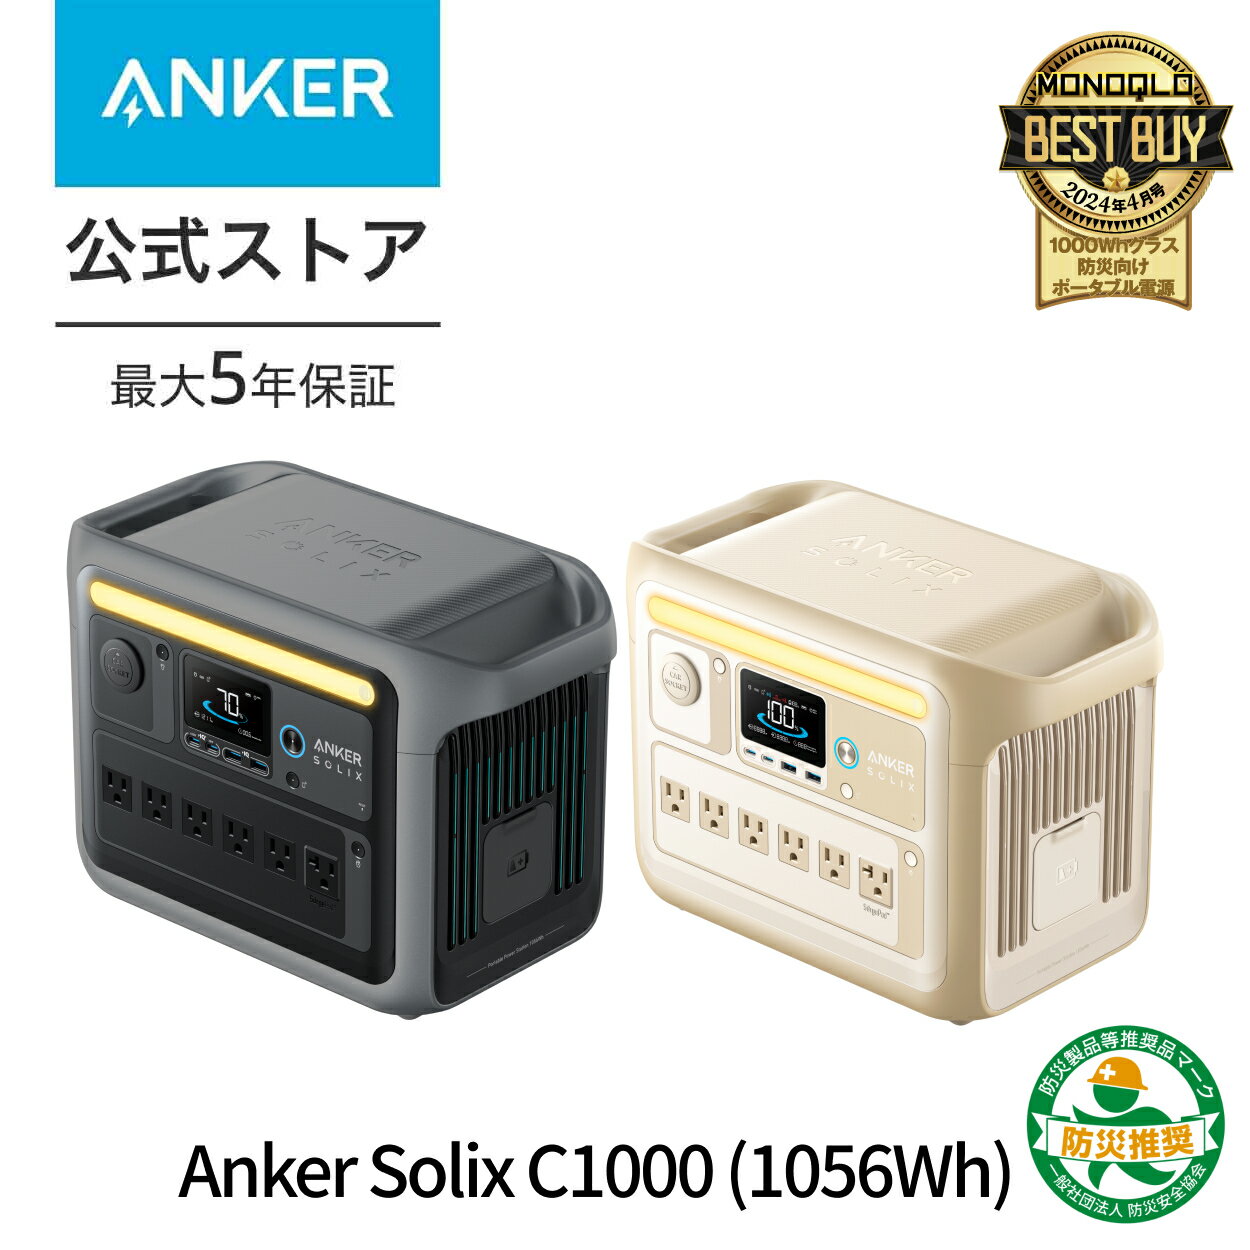 Anker Solix C1000 Portable Pow